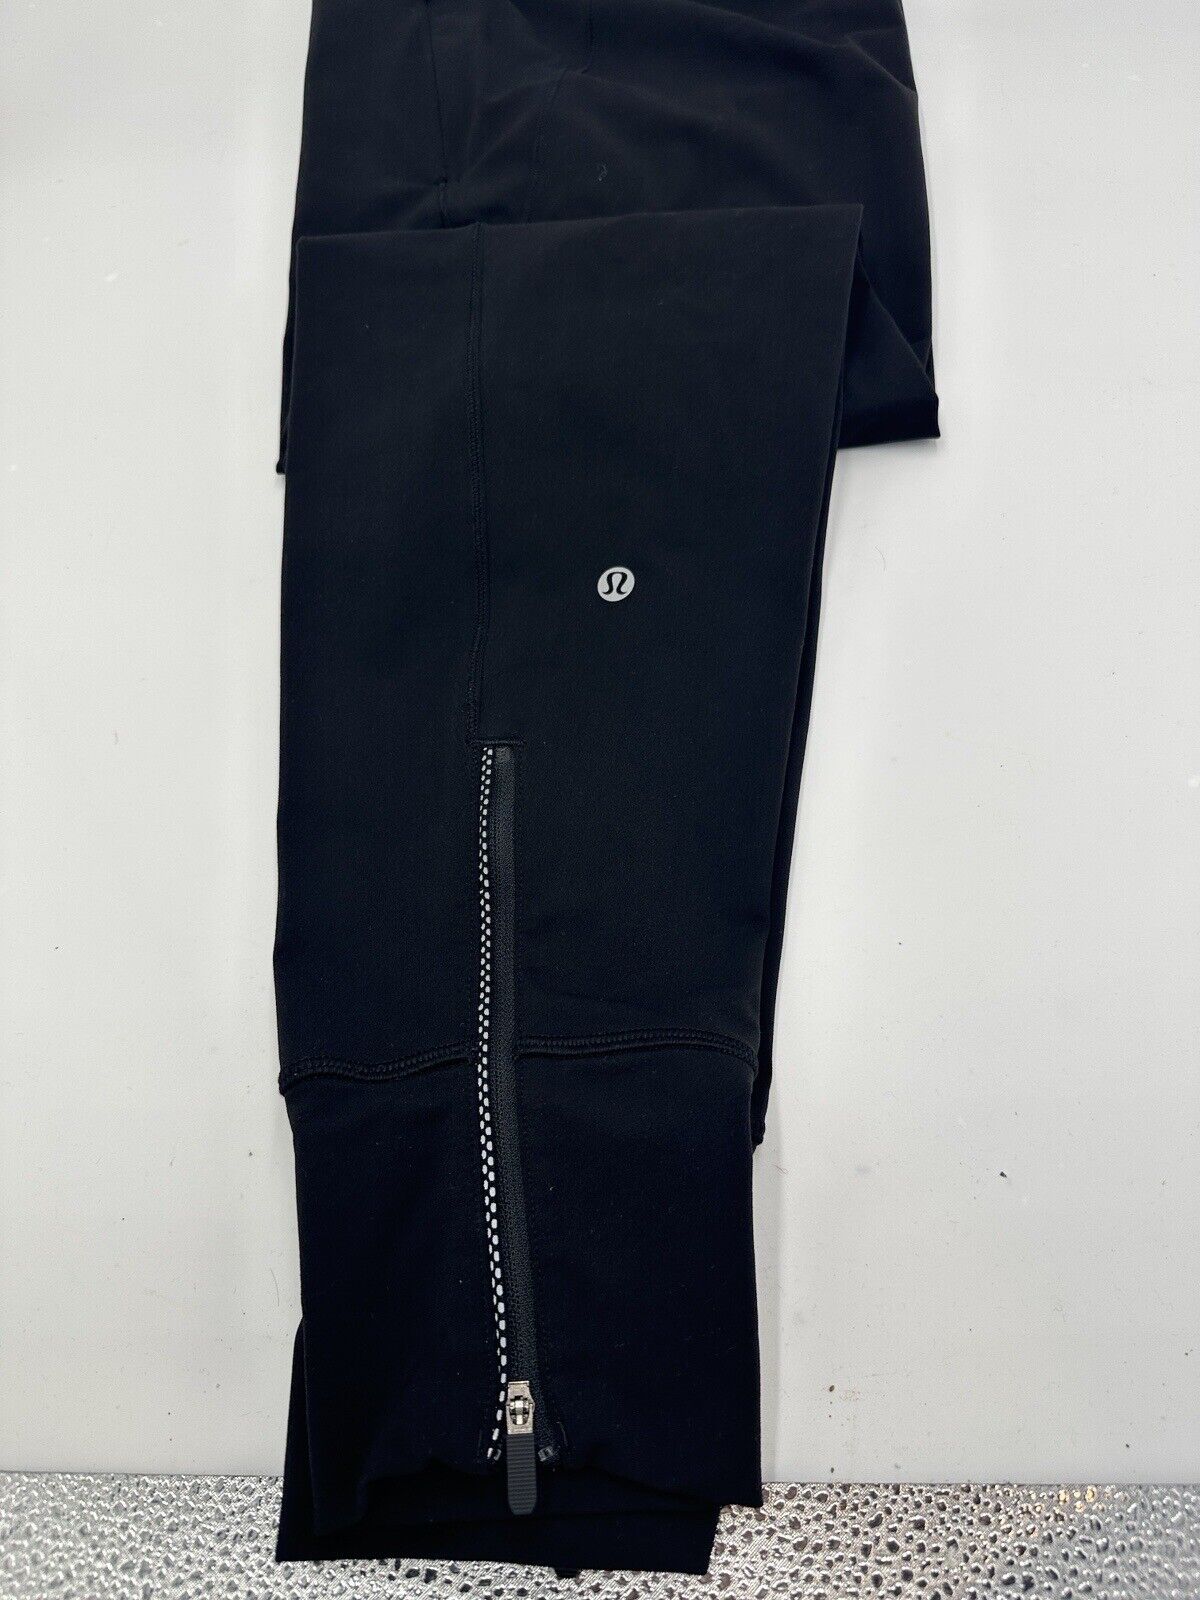 Lululemon Fresh Tracks Pant Black Size 4 Zippered Legs Reflective w/ Pockets